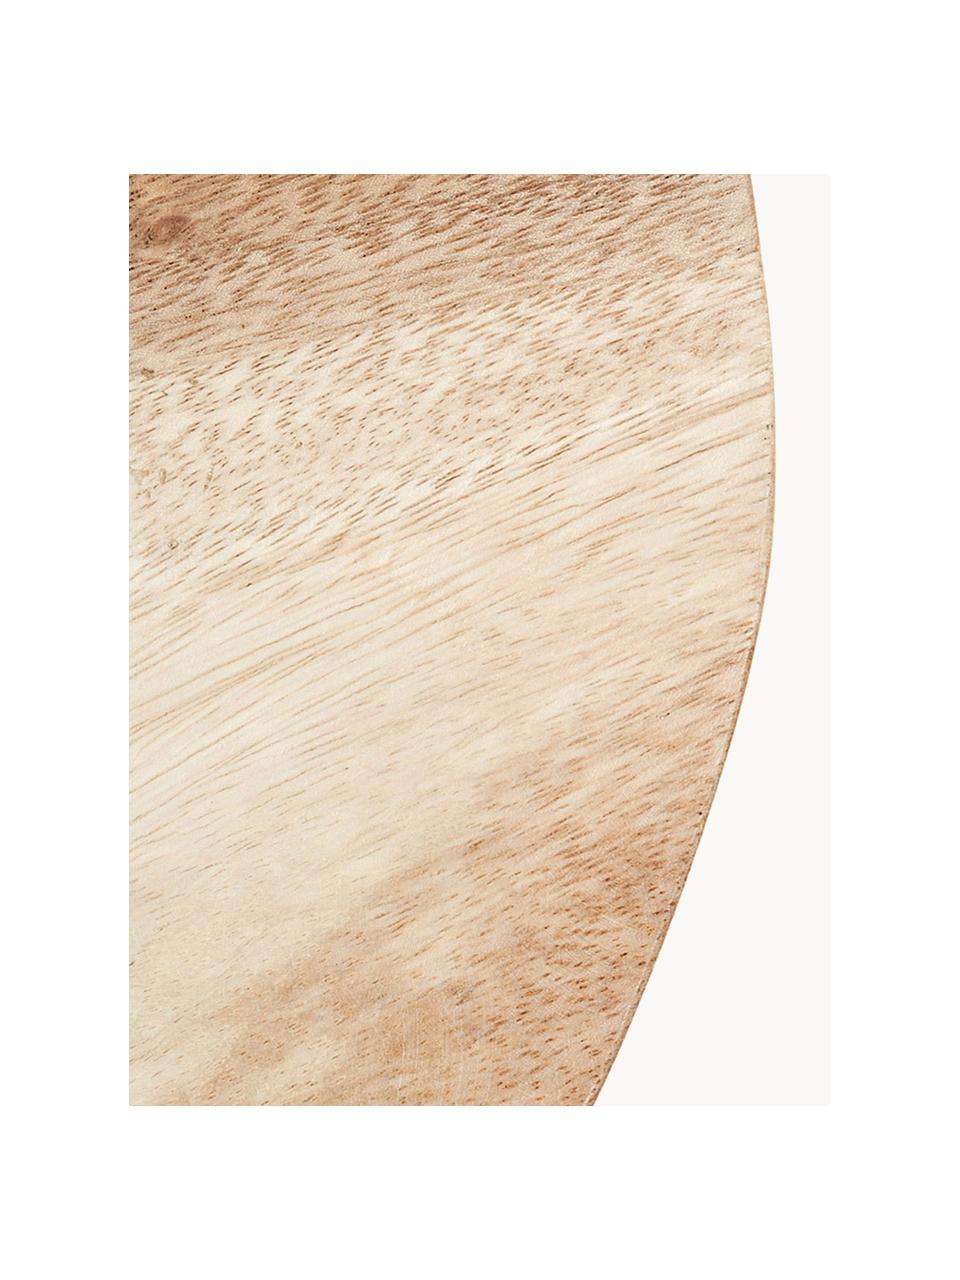 Stolička z mungurového dřeva Brocsy, Lakované přírodní dřevo, Mungurové dřevo, bílá, Š 30 cm, V 44 cm